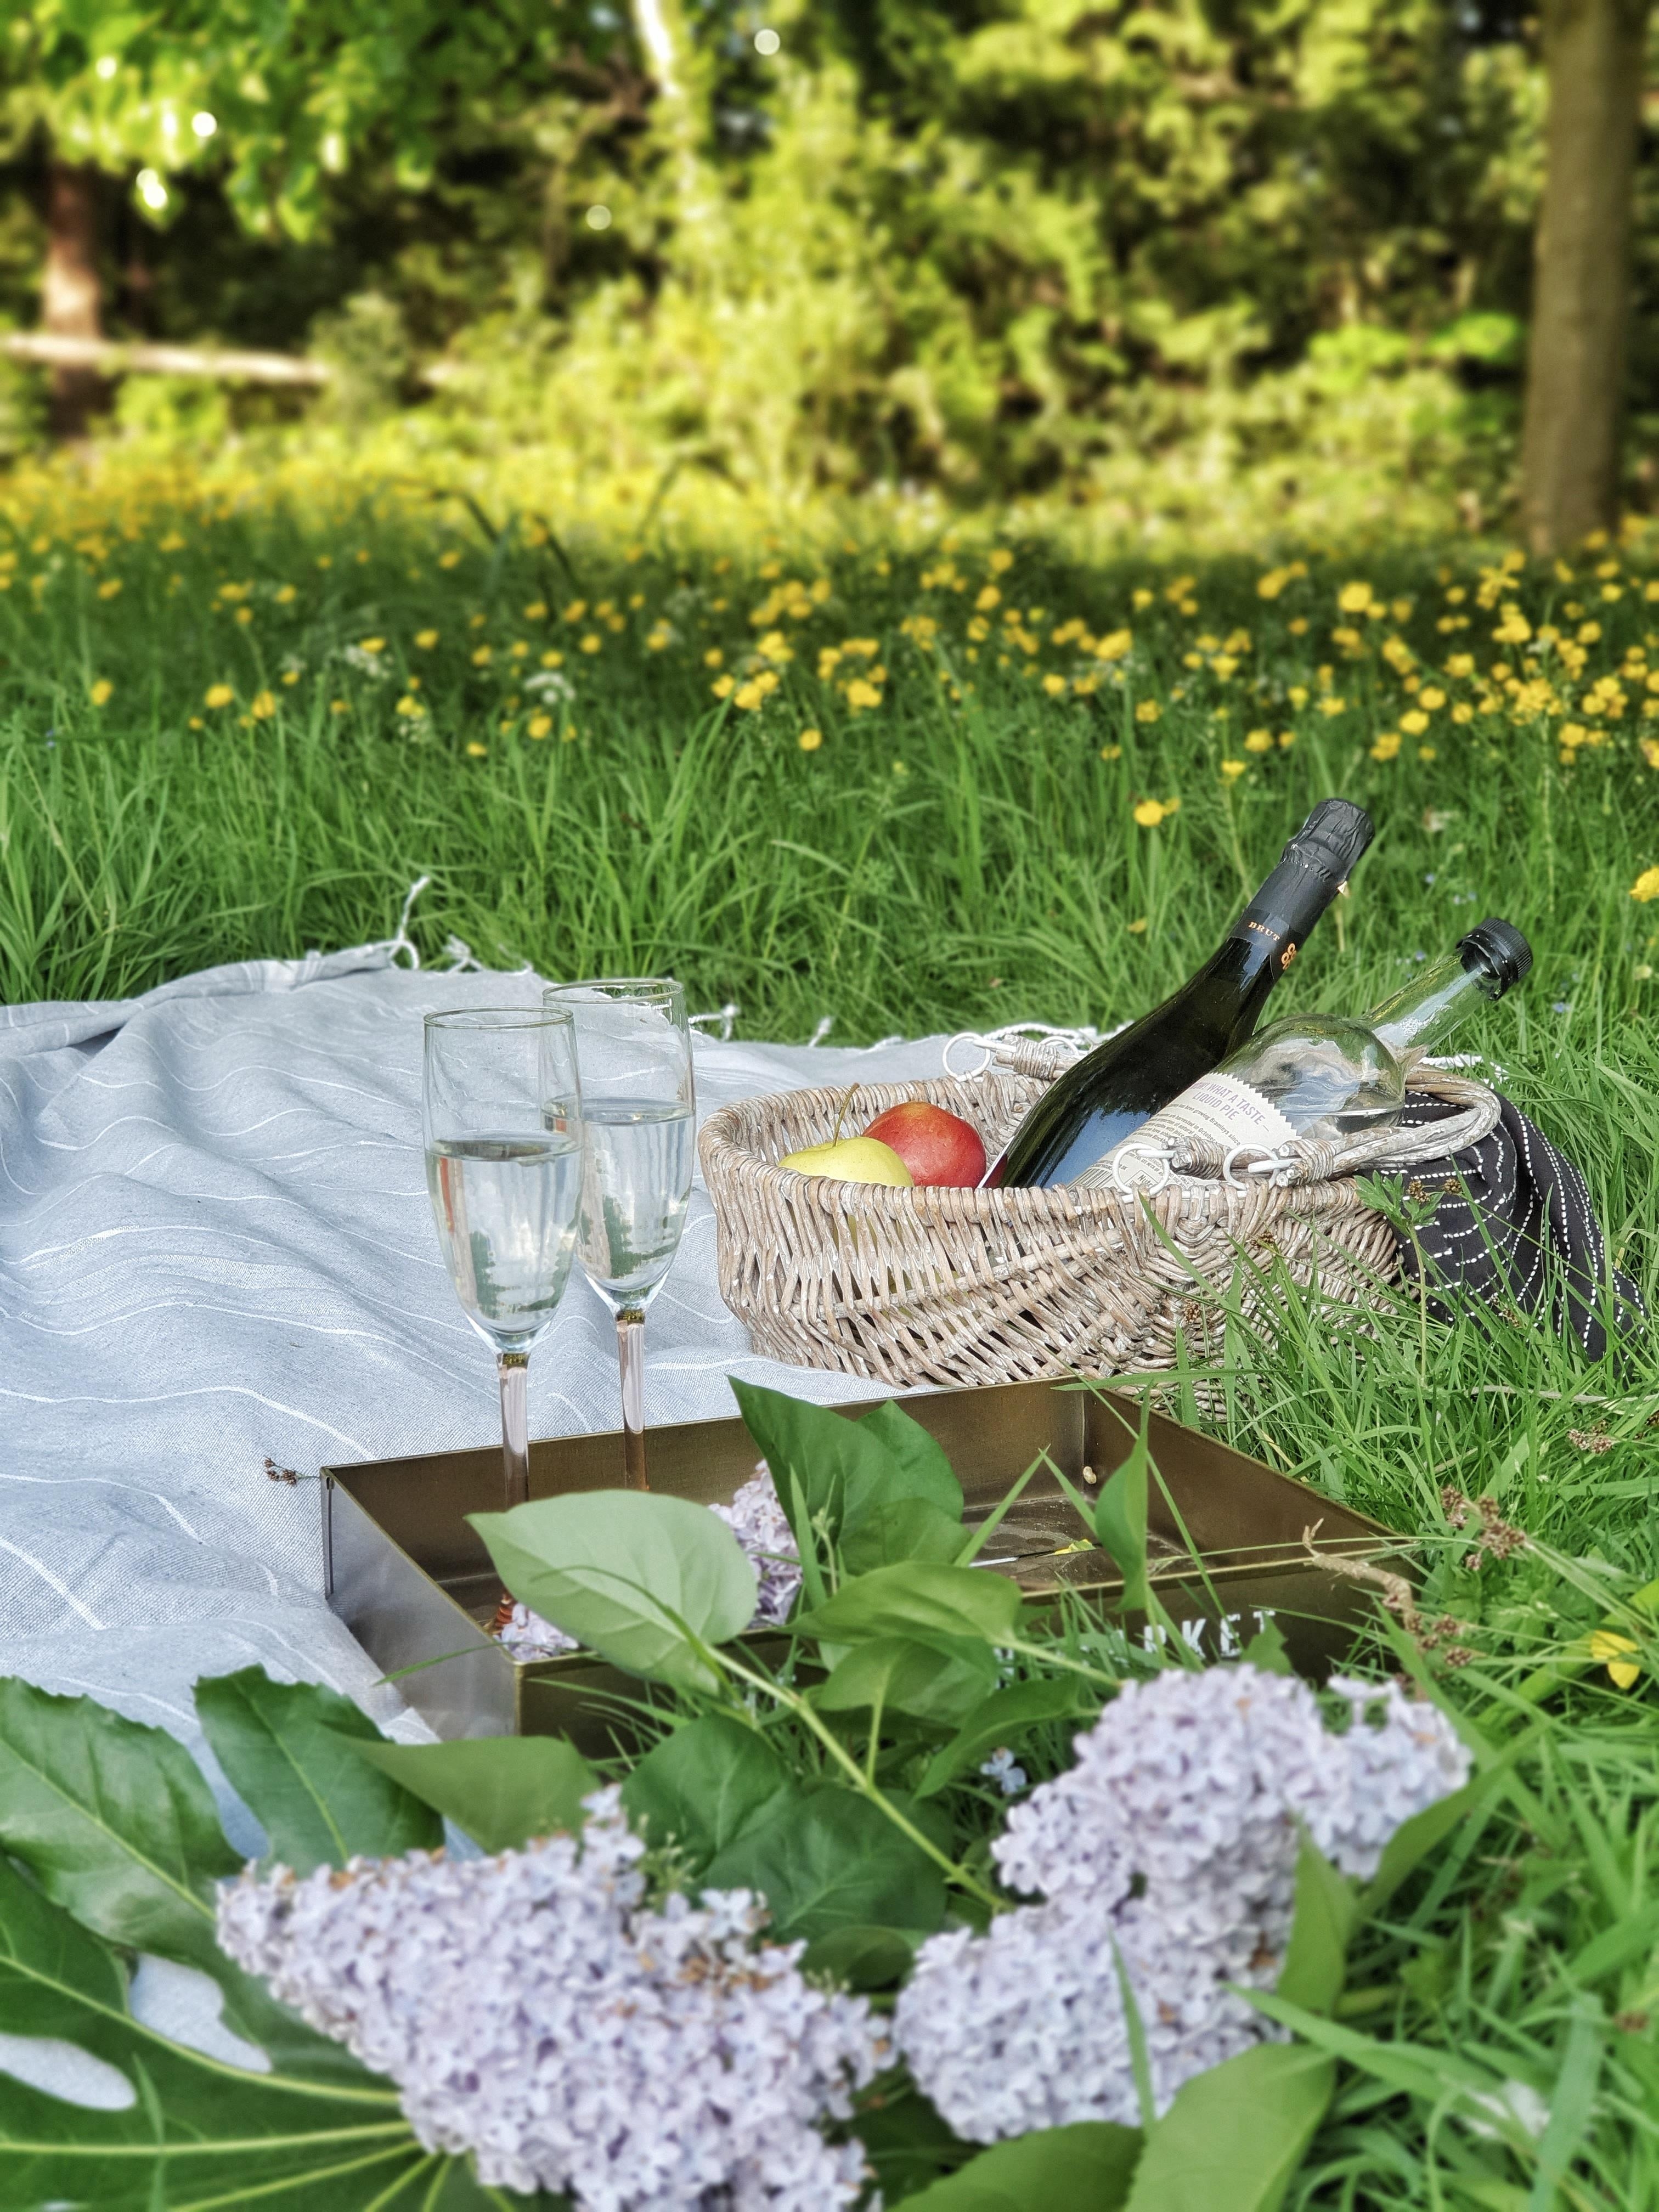 Picknick im Park...
#sommer #sommerdeko #garten #couchliebt #boho #solebich #england #urlaub